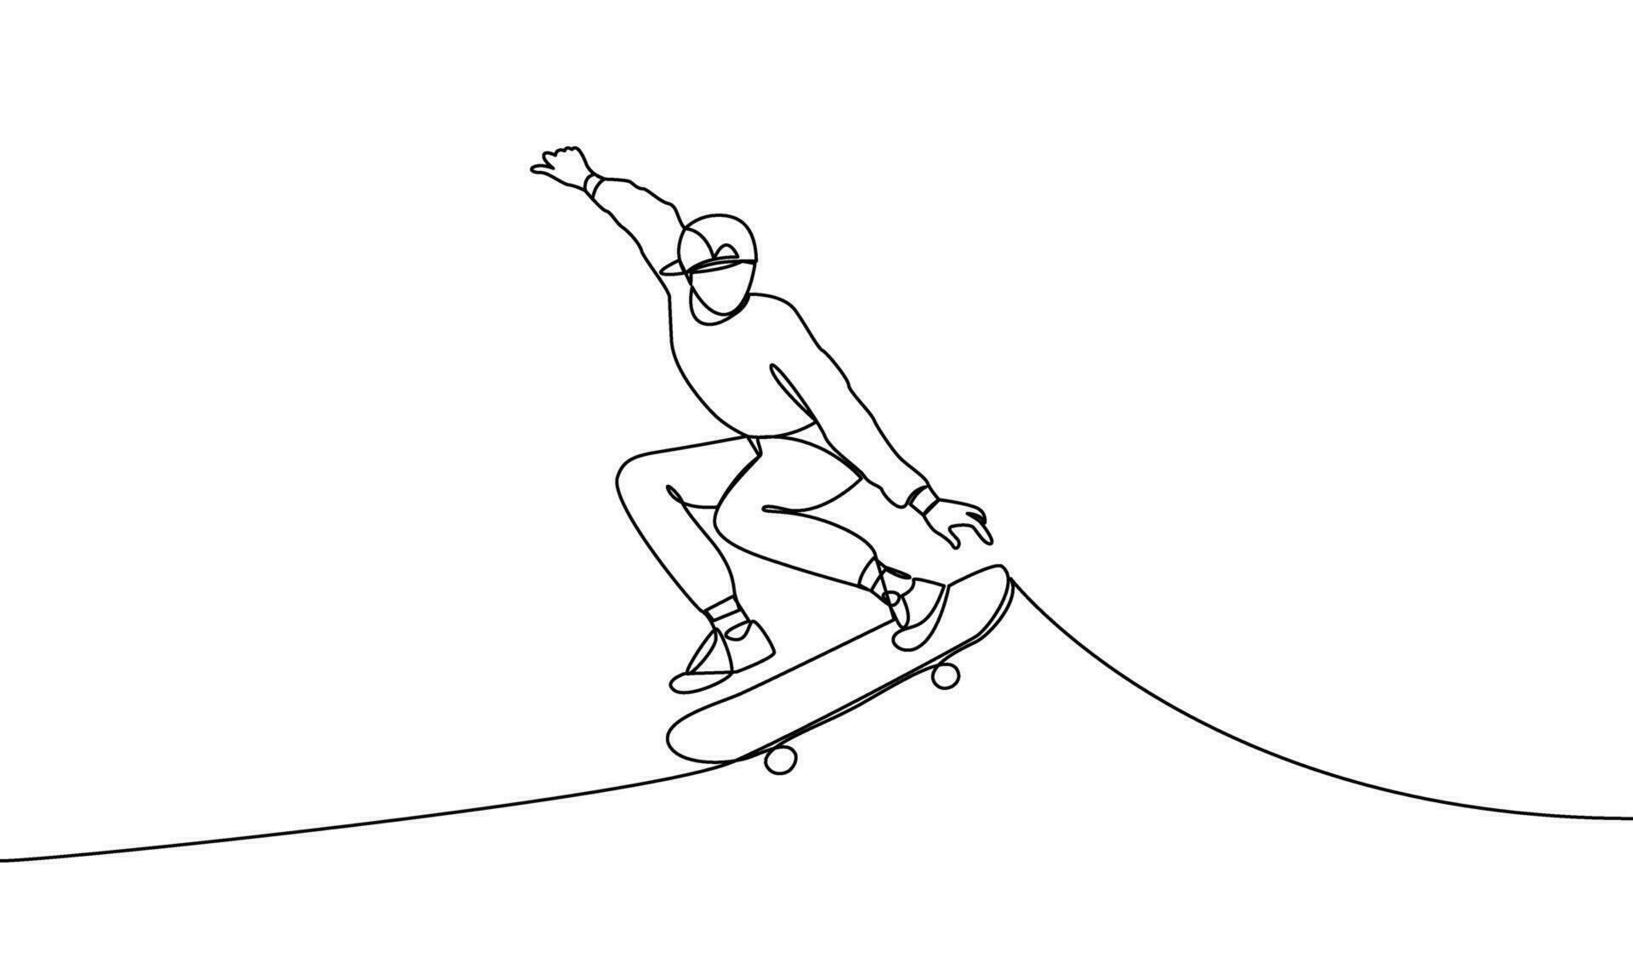 soltero continuo línea dibujo de un joven hombre haciendo un patineta saltar truco. Deportes, andar en patineta extremo deporte, estilo libre uno línea vector ilustración